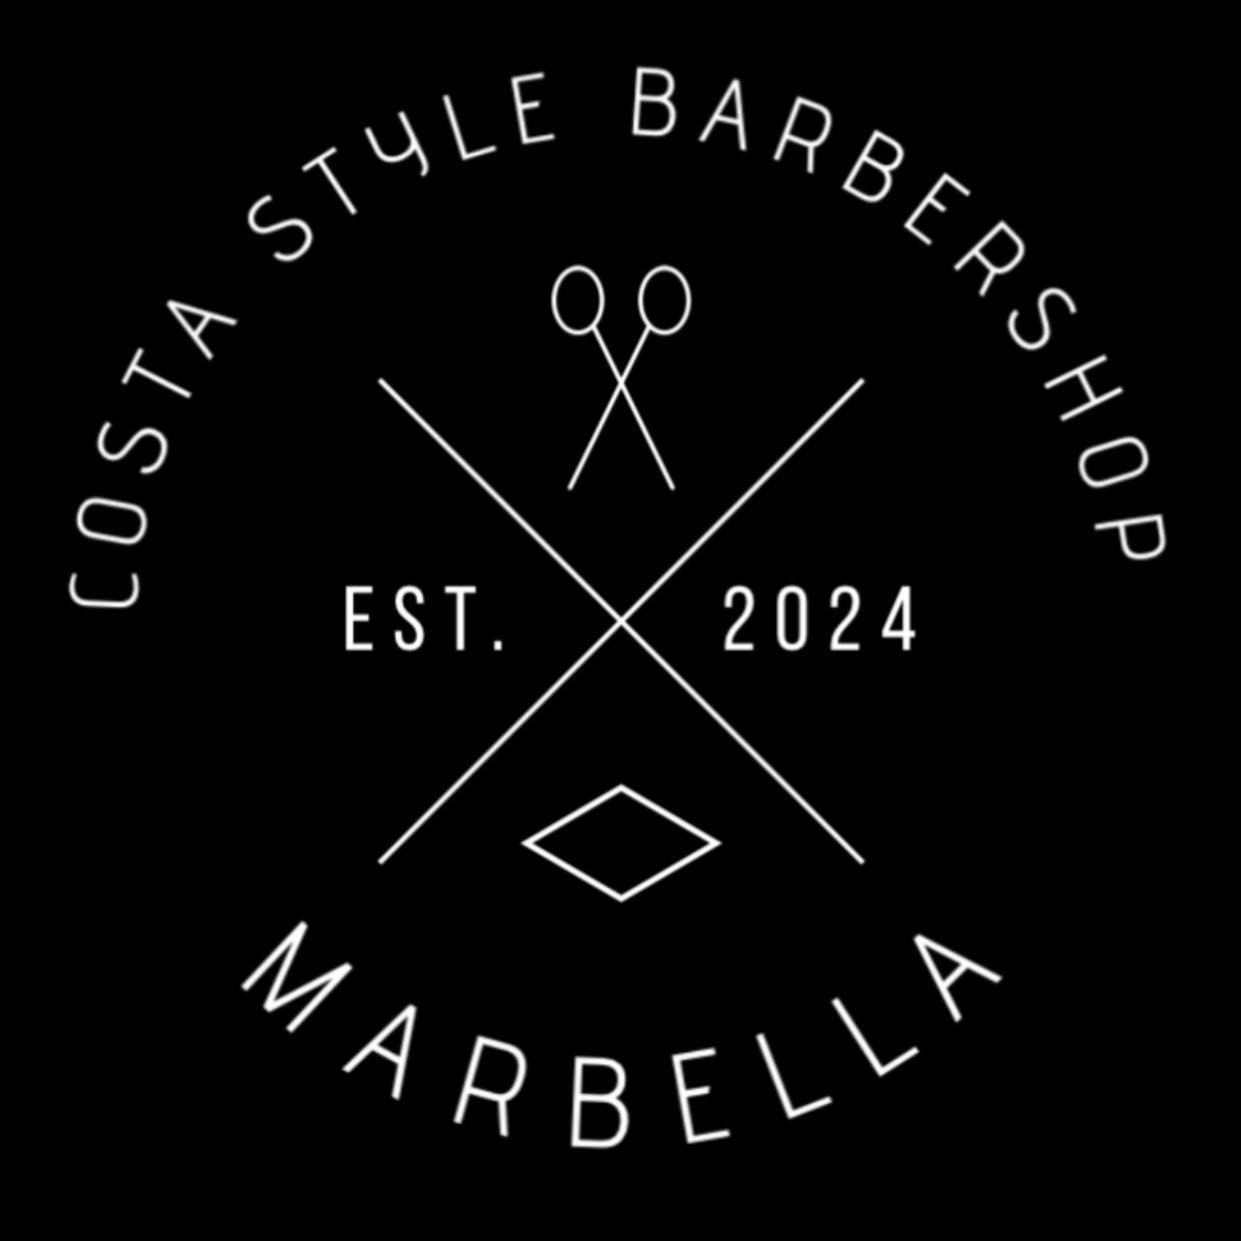 Costa Style Barbershop, Calle Juan de la Cosa, 2, 2G Bajo, 29603, Marbella